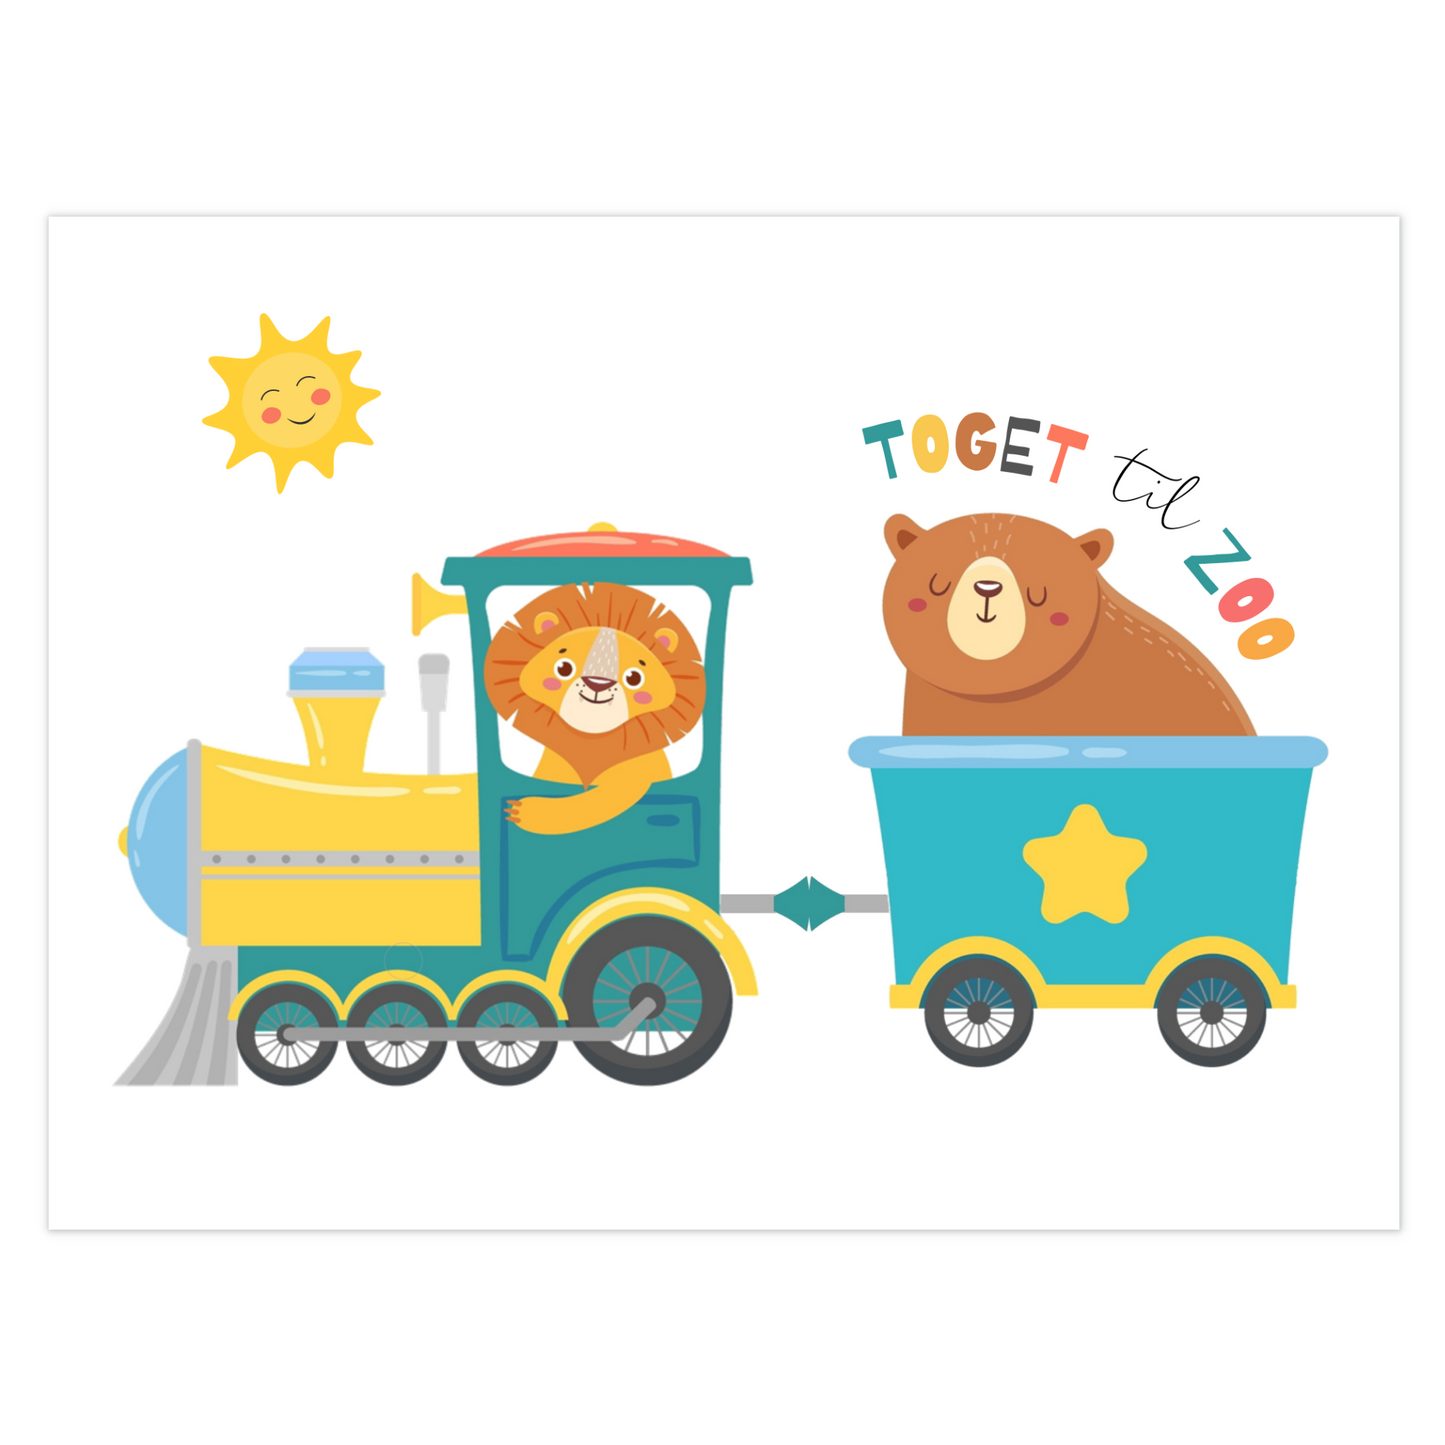 Koselig barnaplakat med løve og bjørn på tur med toget til Zoo.